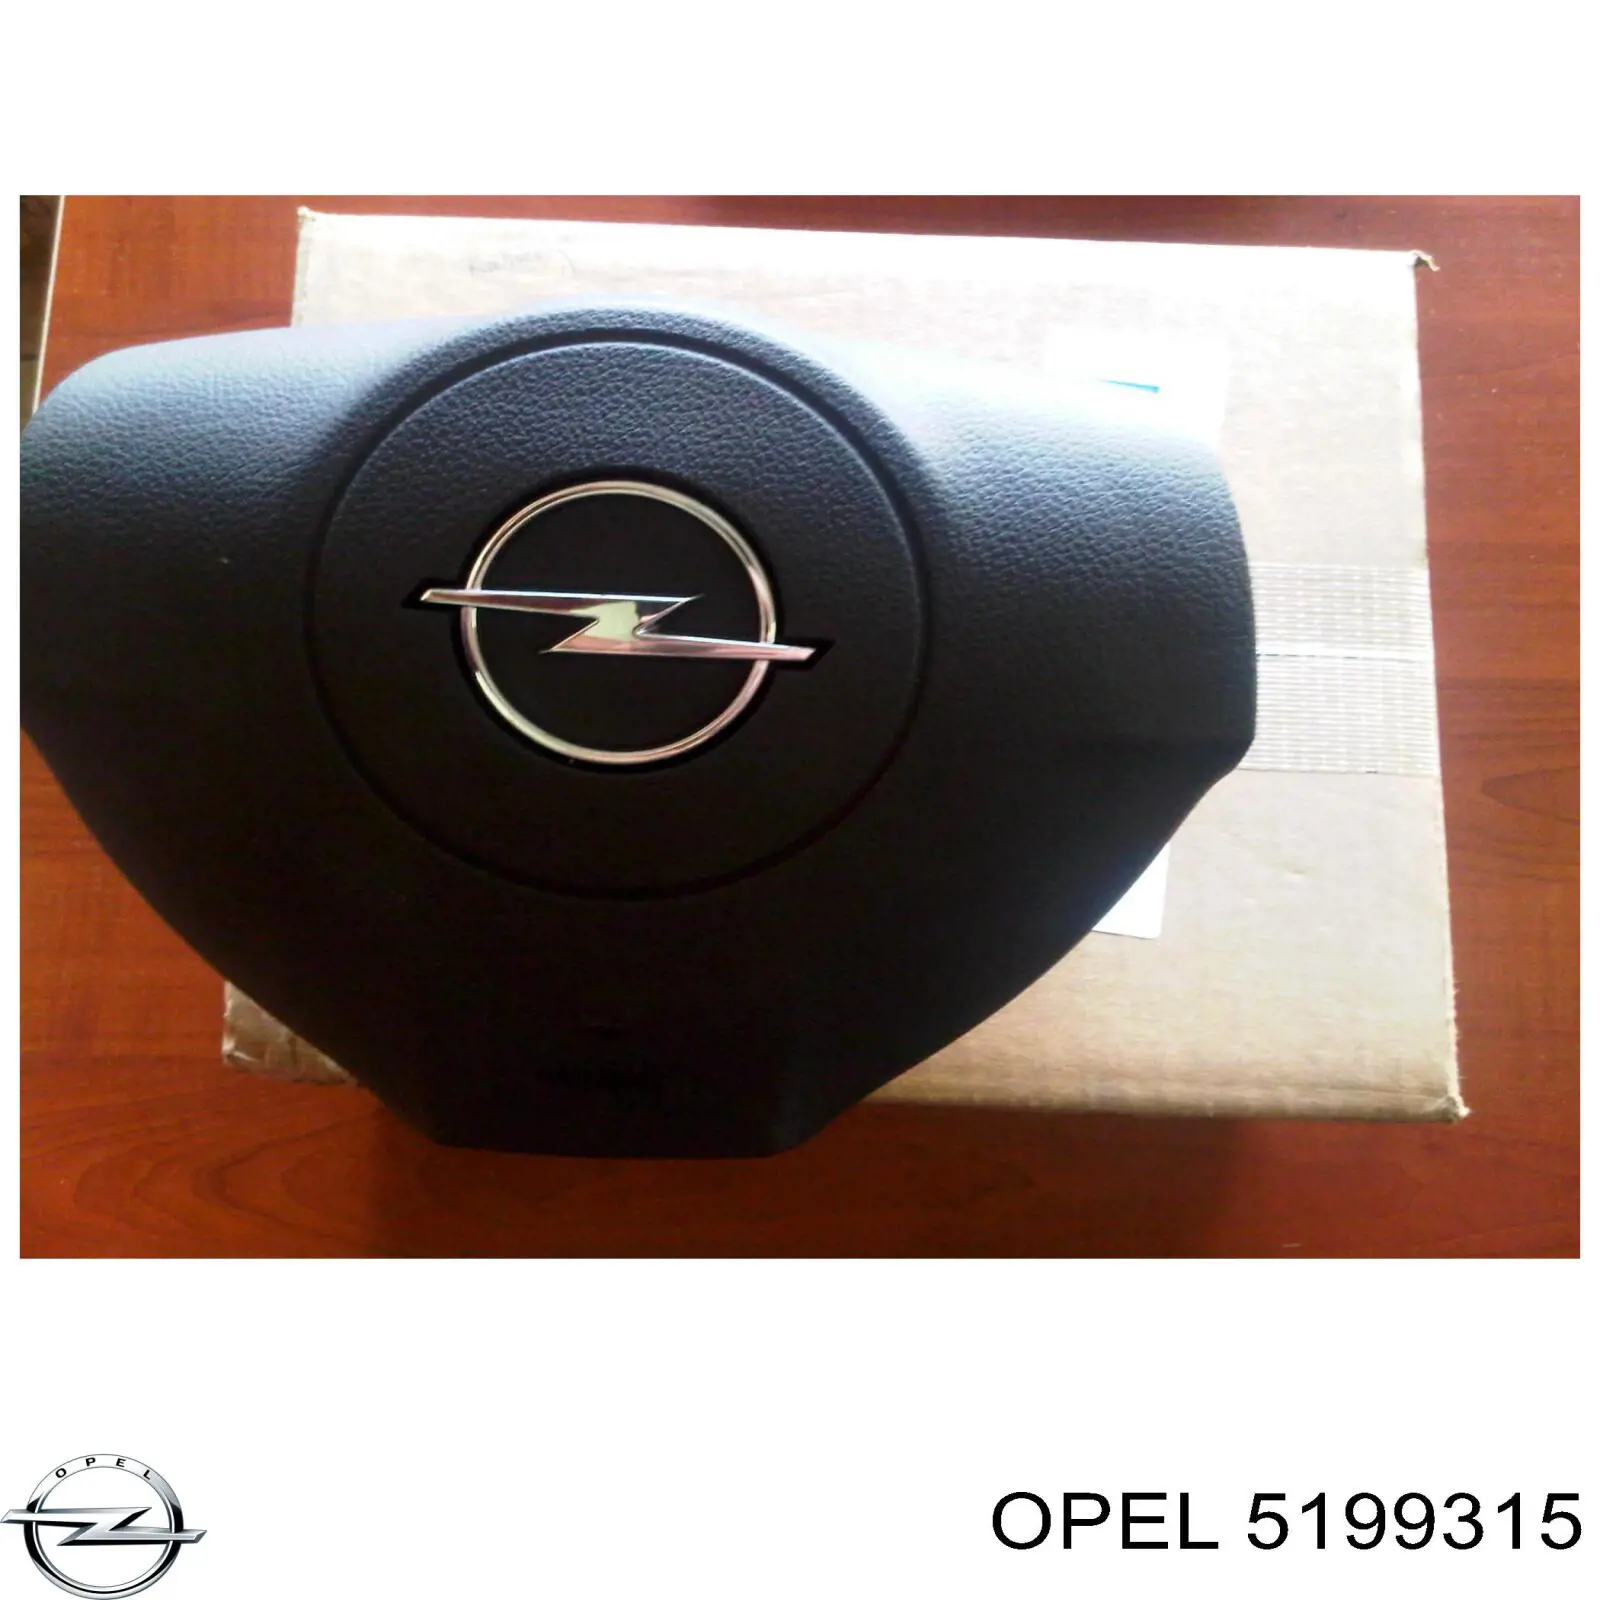 5199315 Opel cinto de segurança (airbag de condutor)